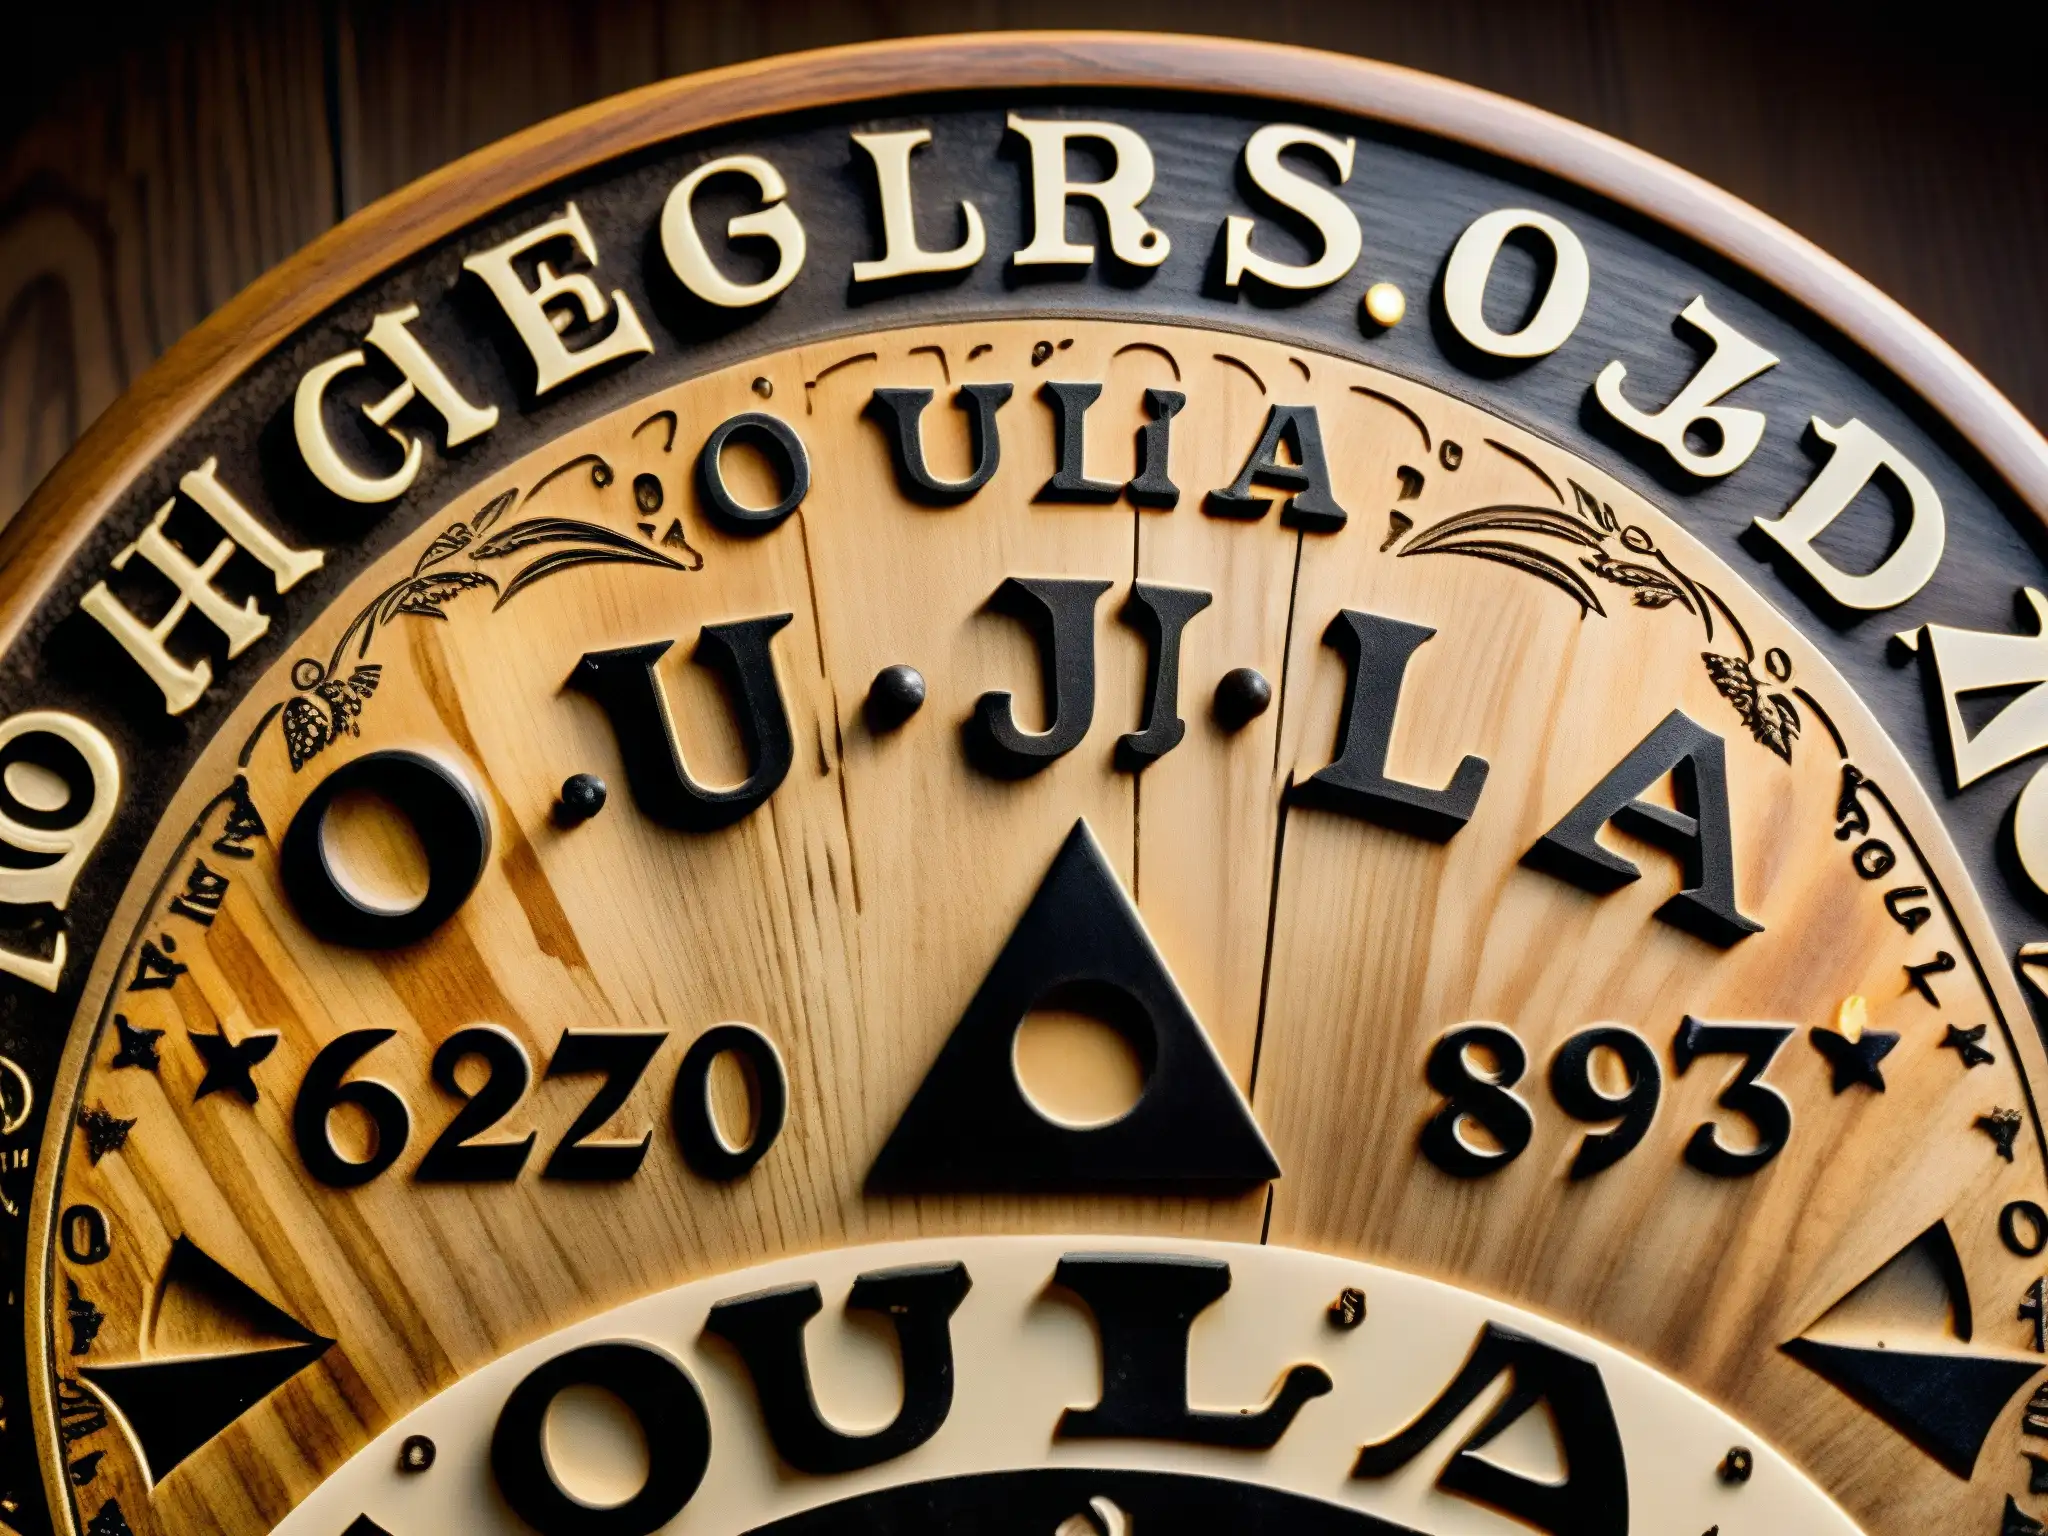 Detallada imagen de tablero Ouija vintage envejecido, con letras, números y símbolos